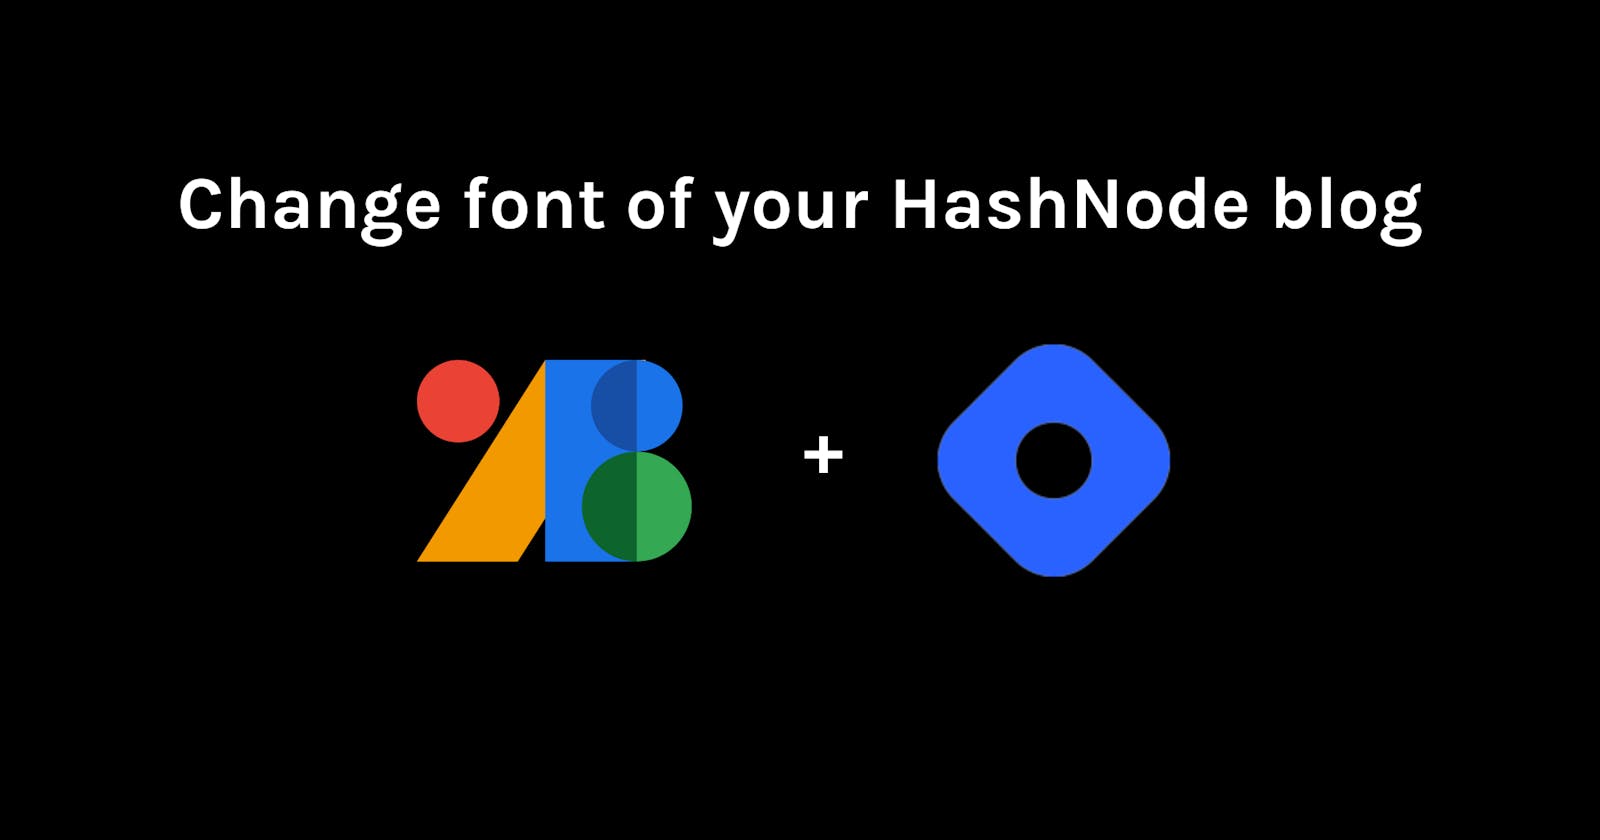 Change font of your HashNode blog